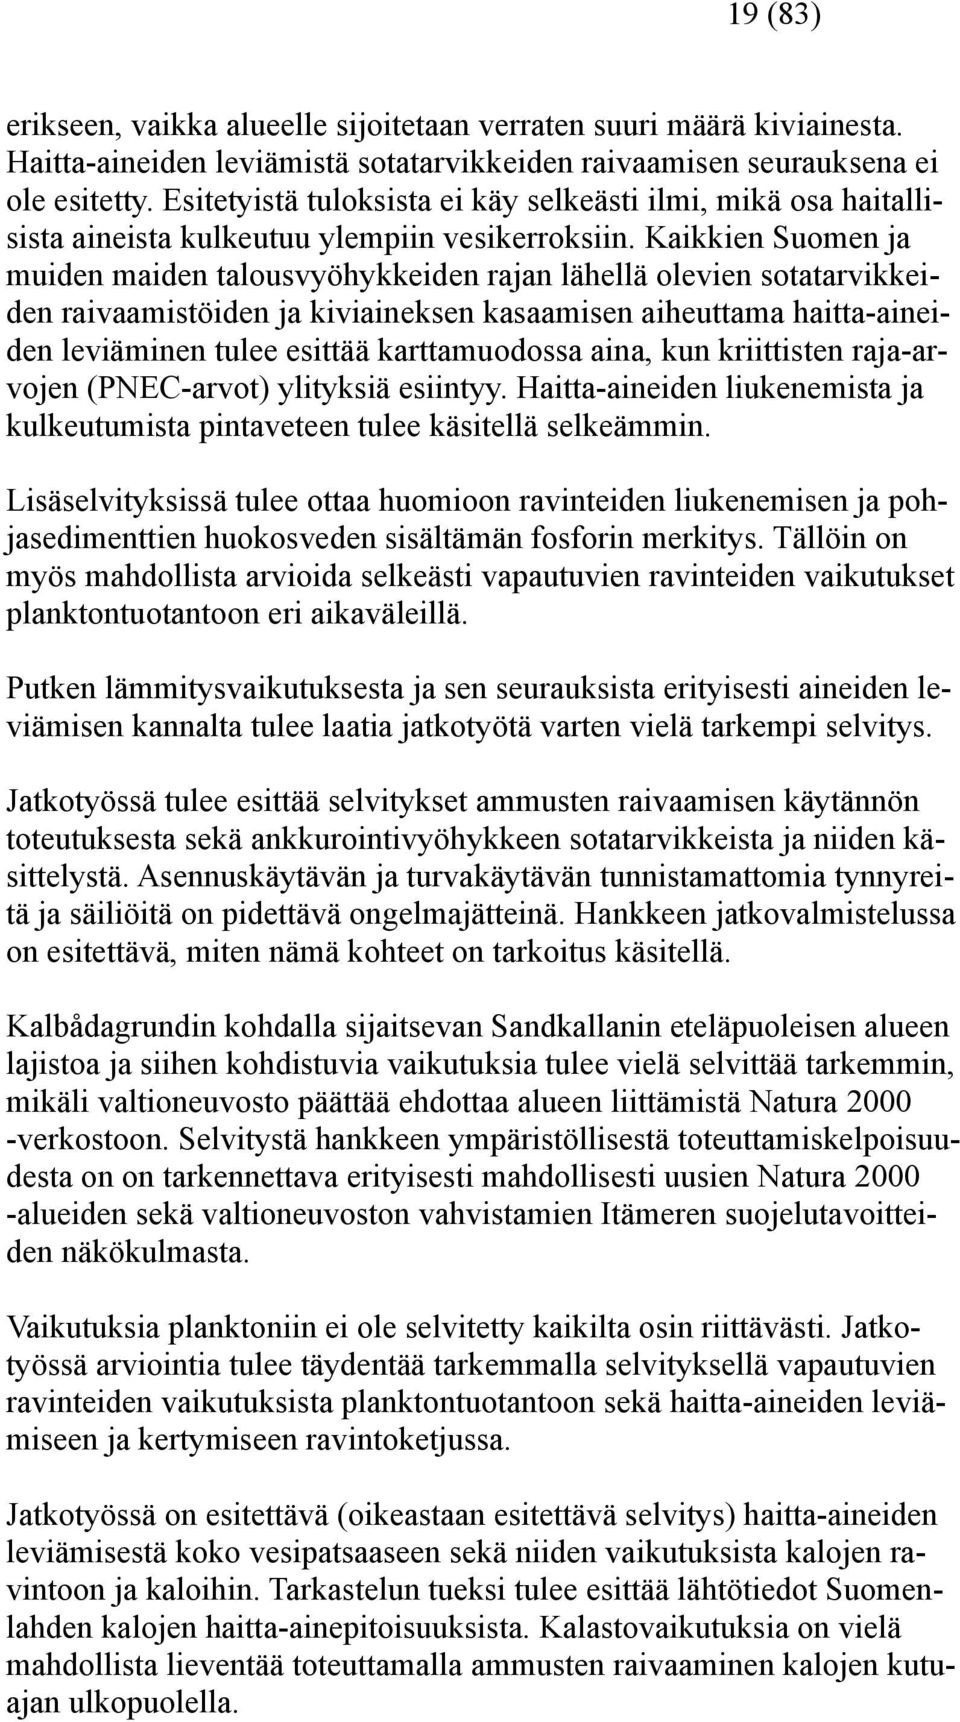 Kaikkien Suomen ja muiden maiden talousvyöhykkeiden rajan lähellä olevien sotatarvikkeiden raivaamistöiden ja kiviaineksen kasaamisen aiheuttama haitta-aineiden leviäminen tulee esittää